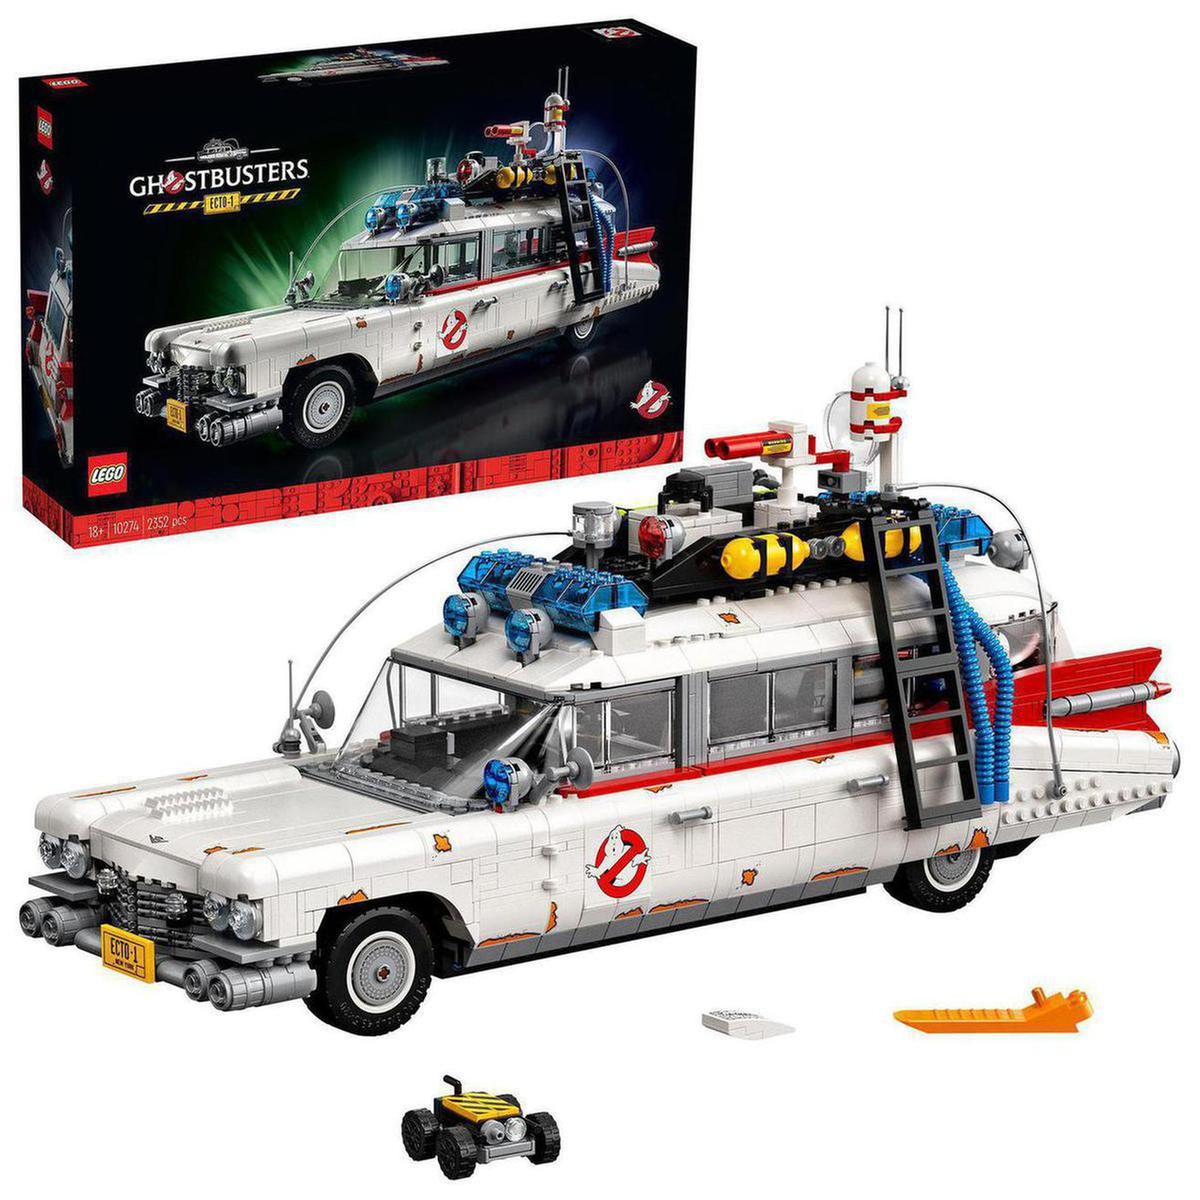 LEGO Creator - Ghostbusters ECTO-1 - 10274 | Grandes Sets LEGO | Loja de  brinquedos e videojogos Online Toysrus